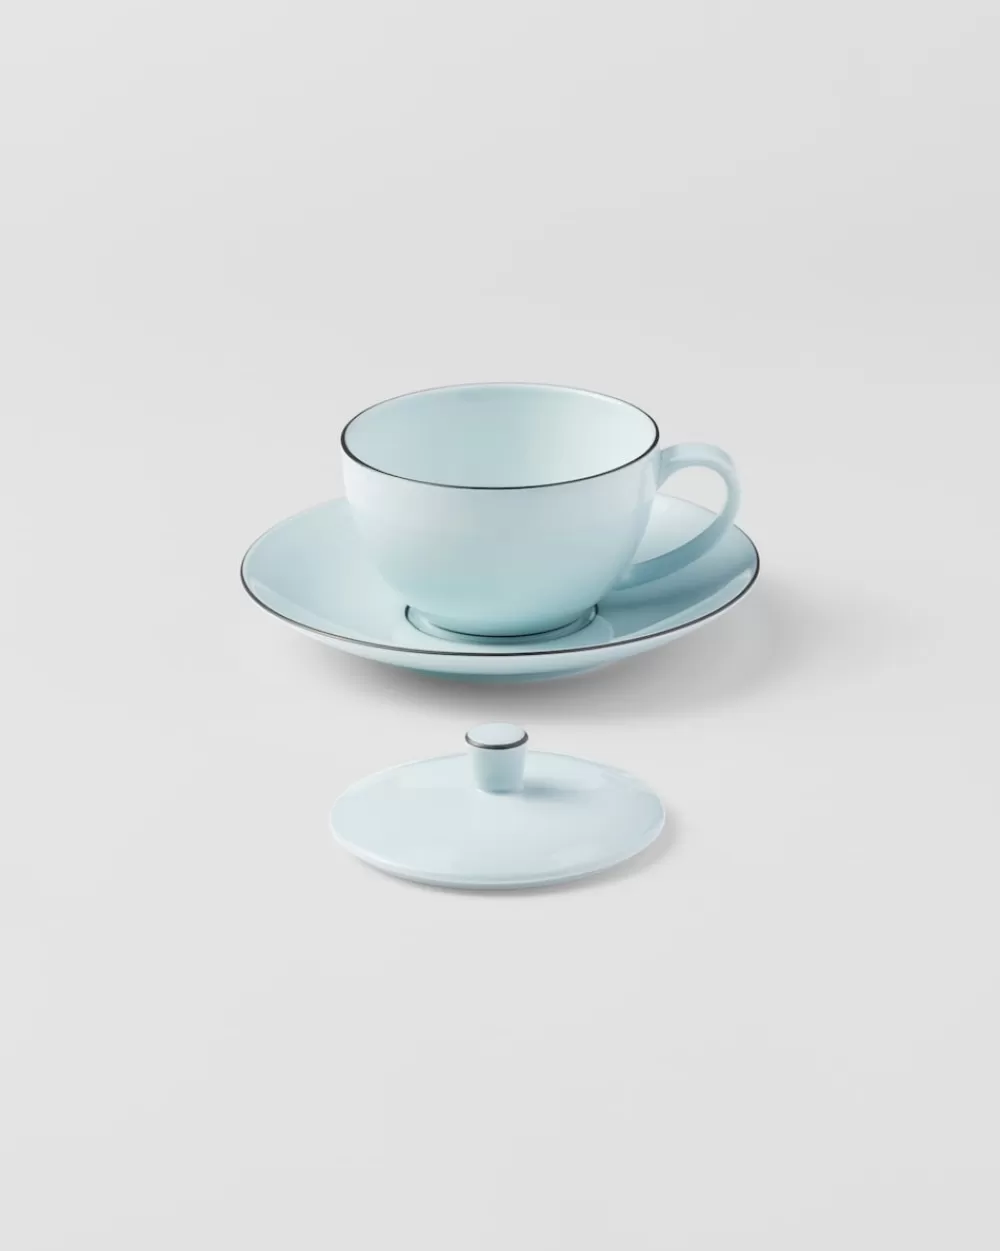 Prada Tazza Da Tè In Porcellana - Celadon